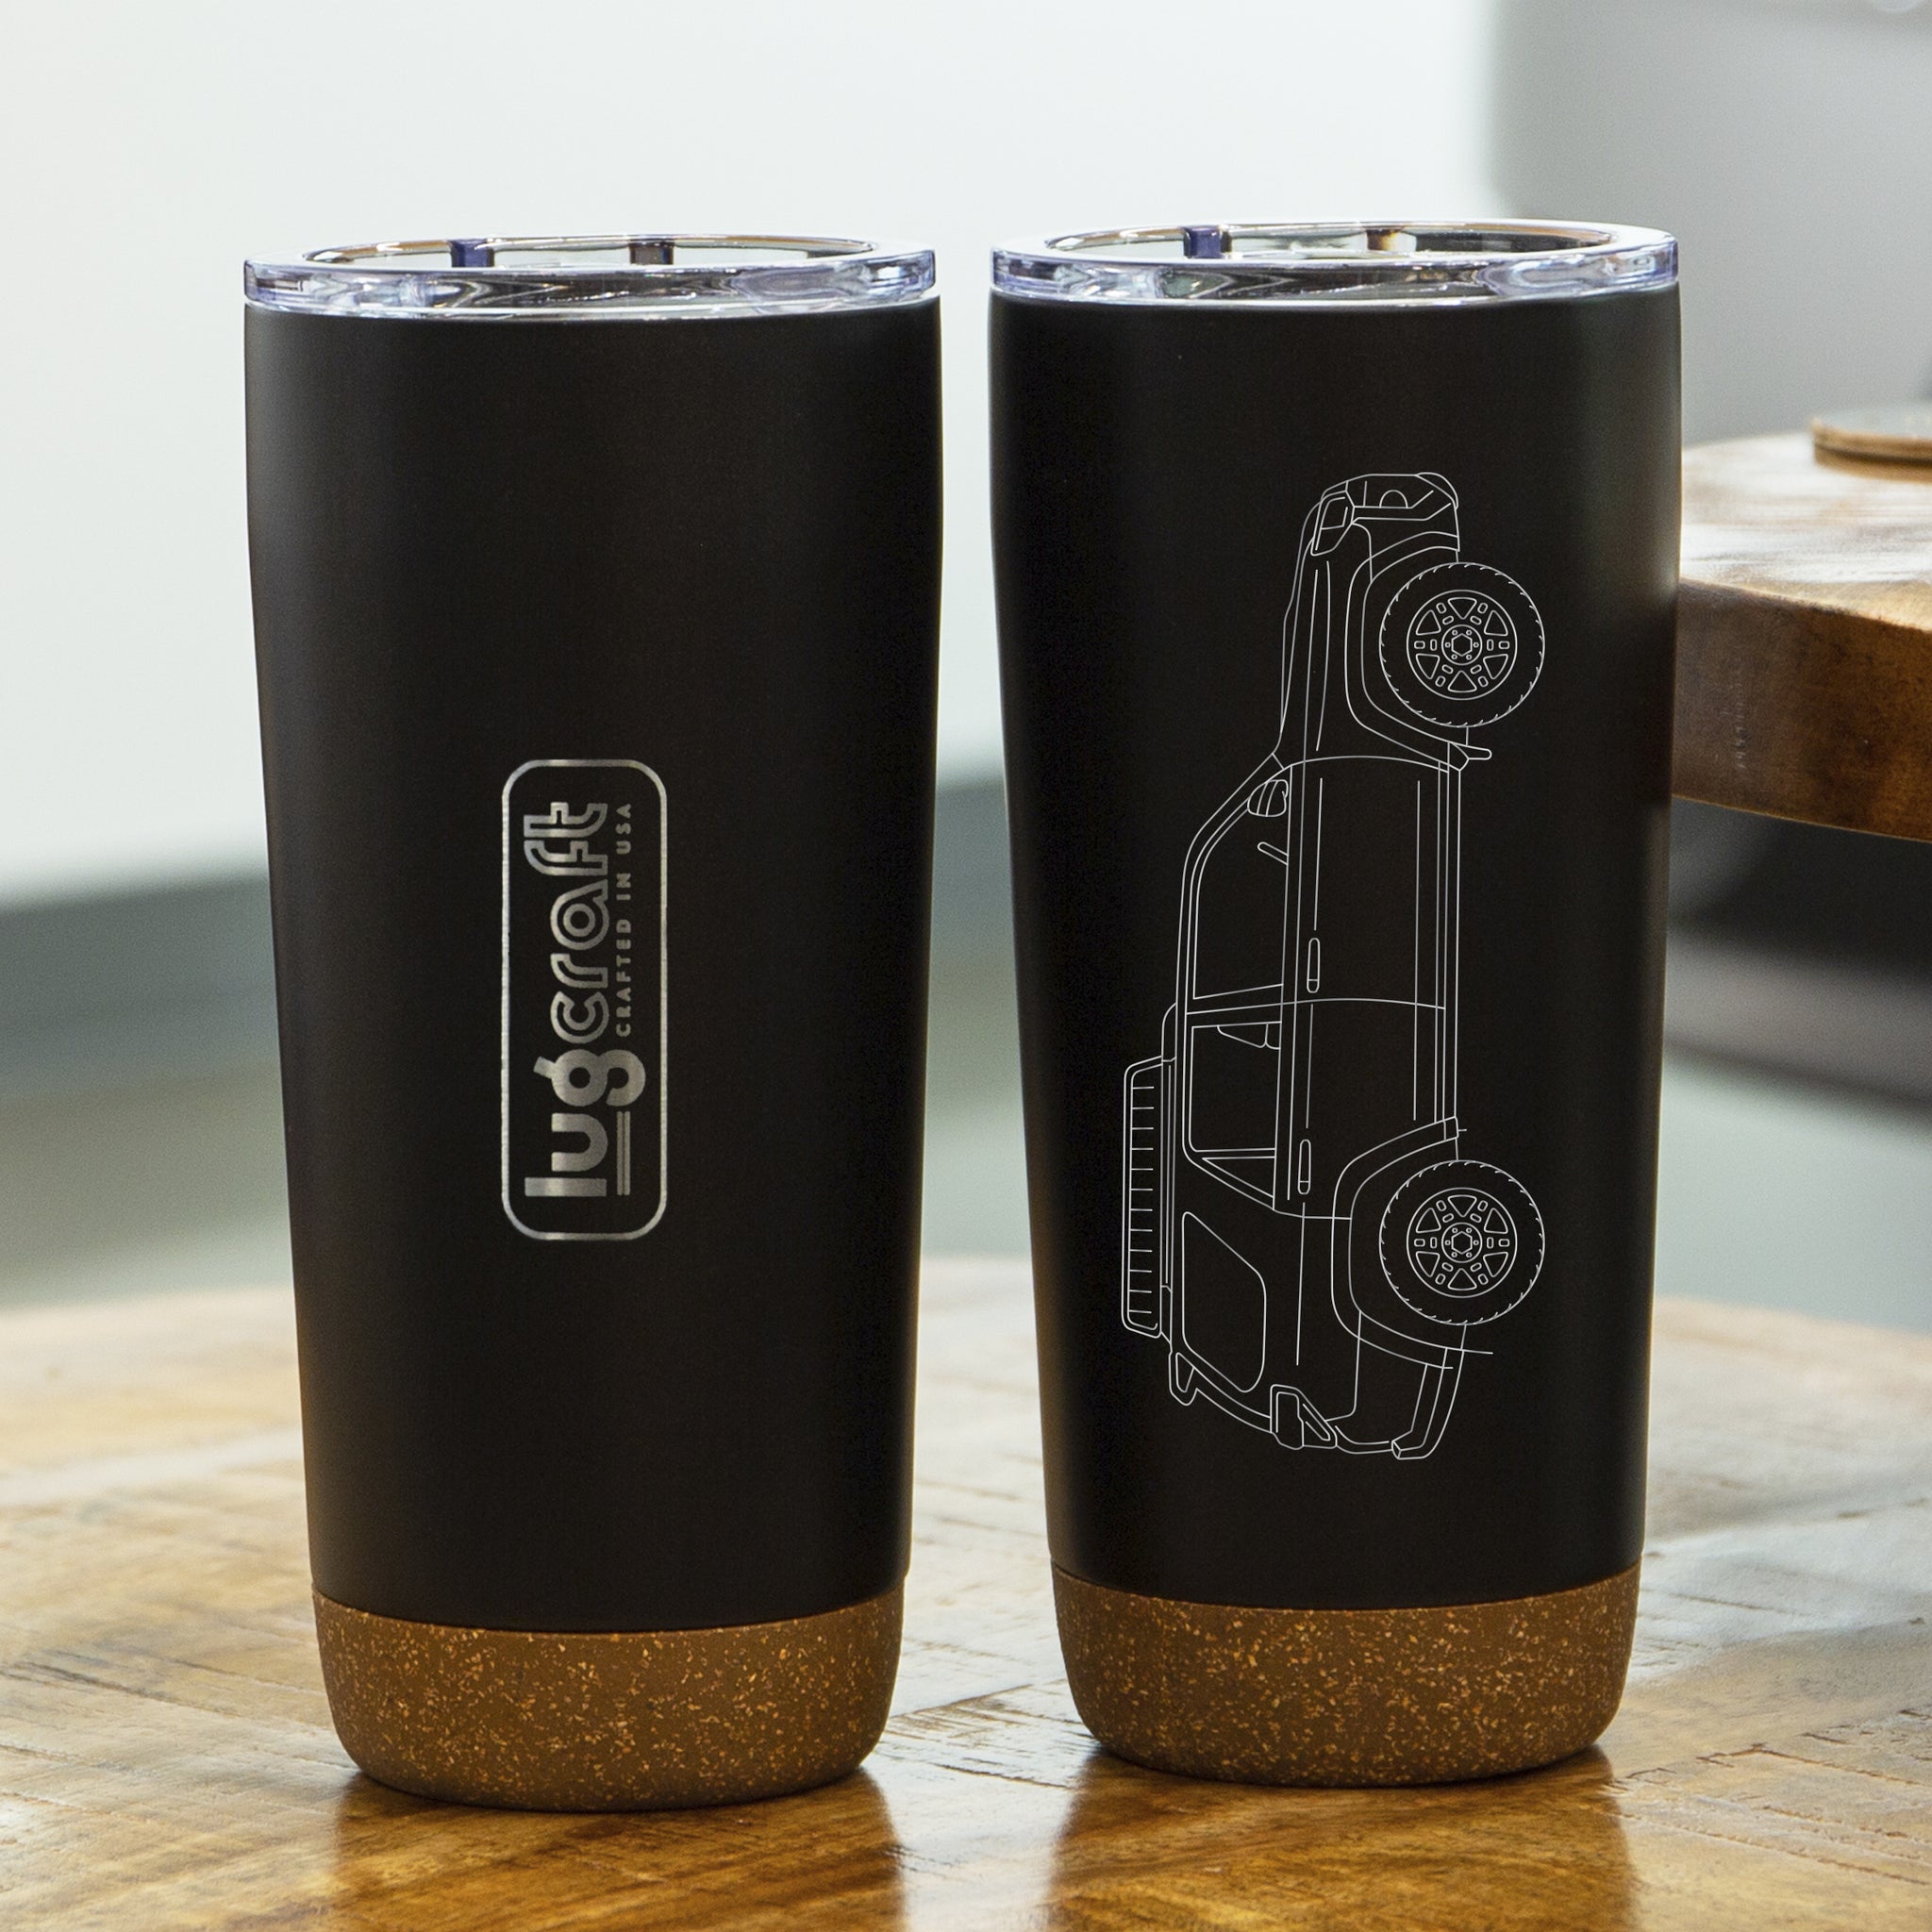 20 oz Coffee Tumbler – The Boneyard Coffee Company